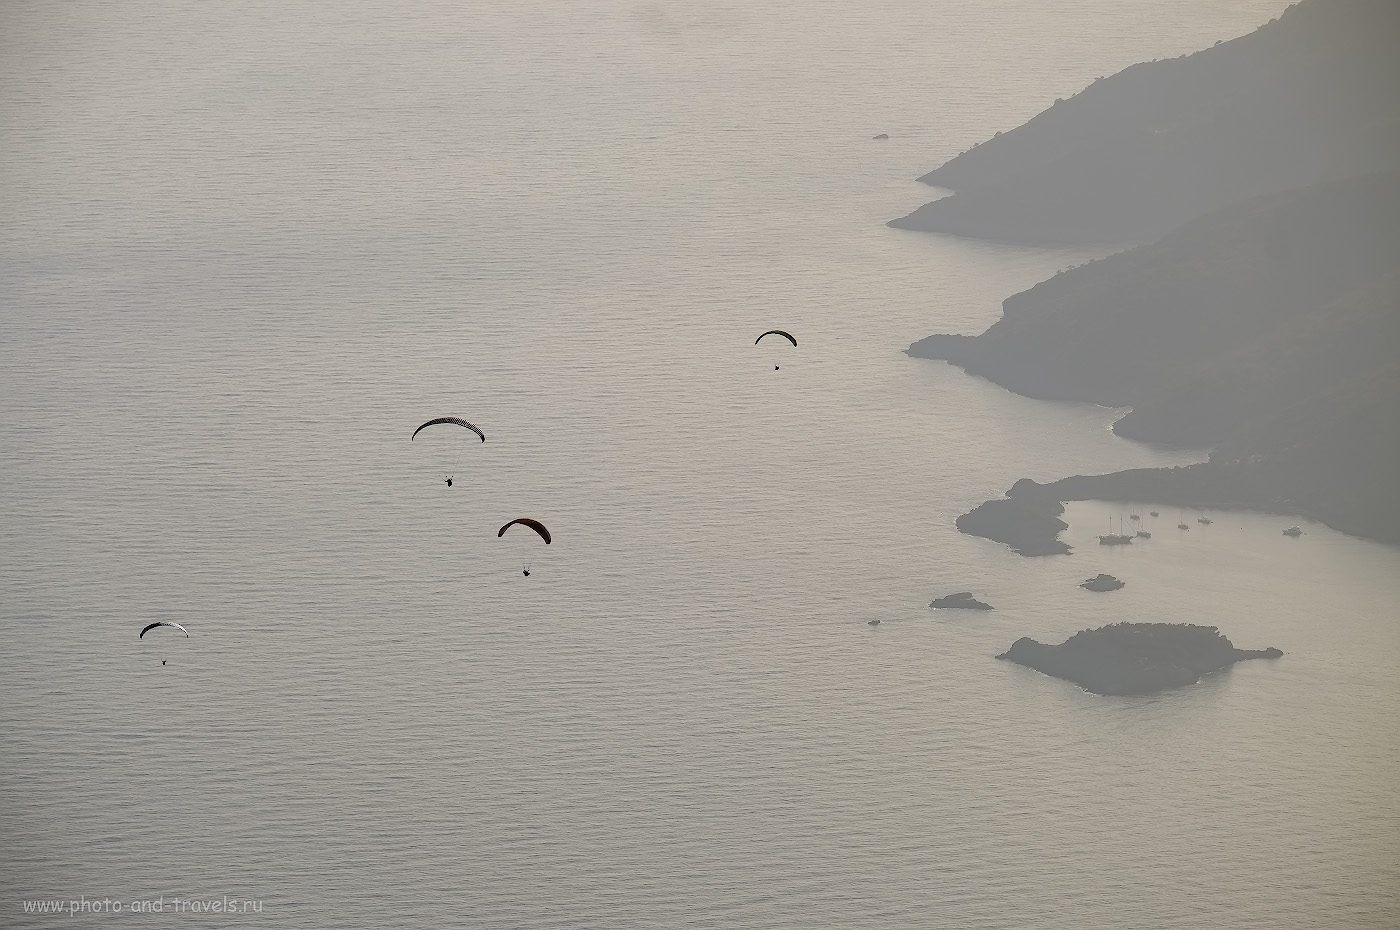 Снимок 24. Группа парапланеристов над заливом залив Бельджегиз (Belceğiz Körfezi). Отзывы туристов о самостоятельном отдыхе в Олюденизе. 1/640, 8.0, 200, +0.67, 200.